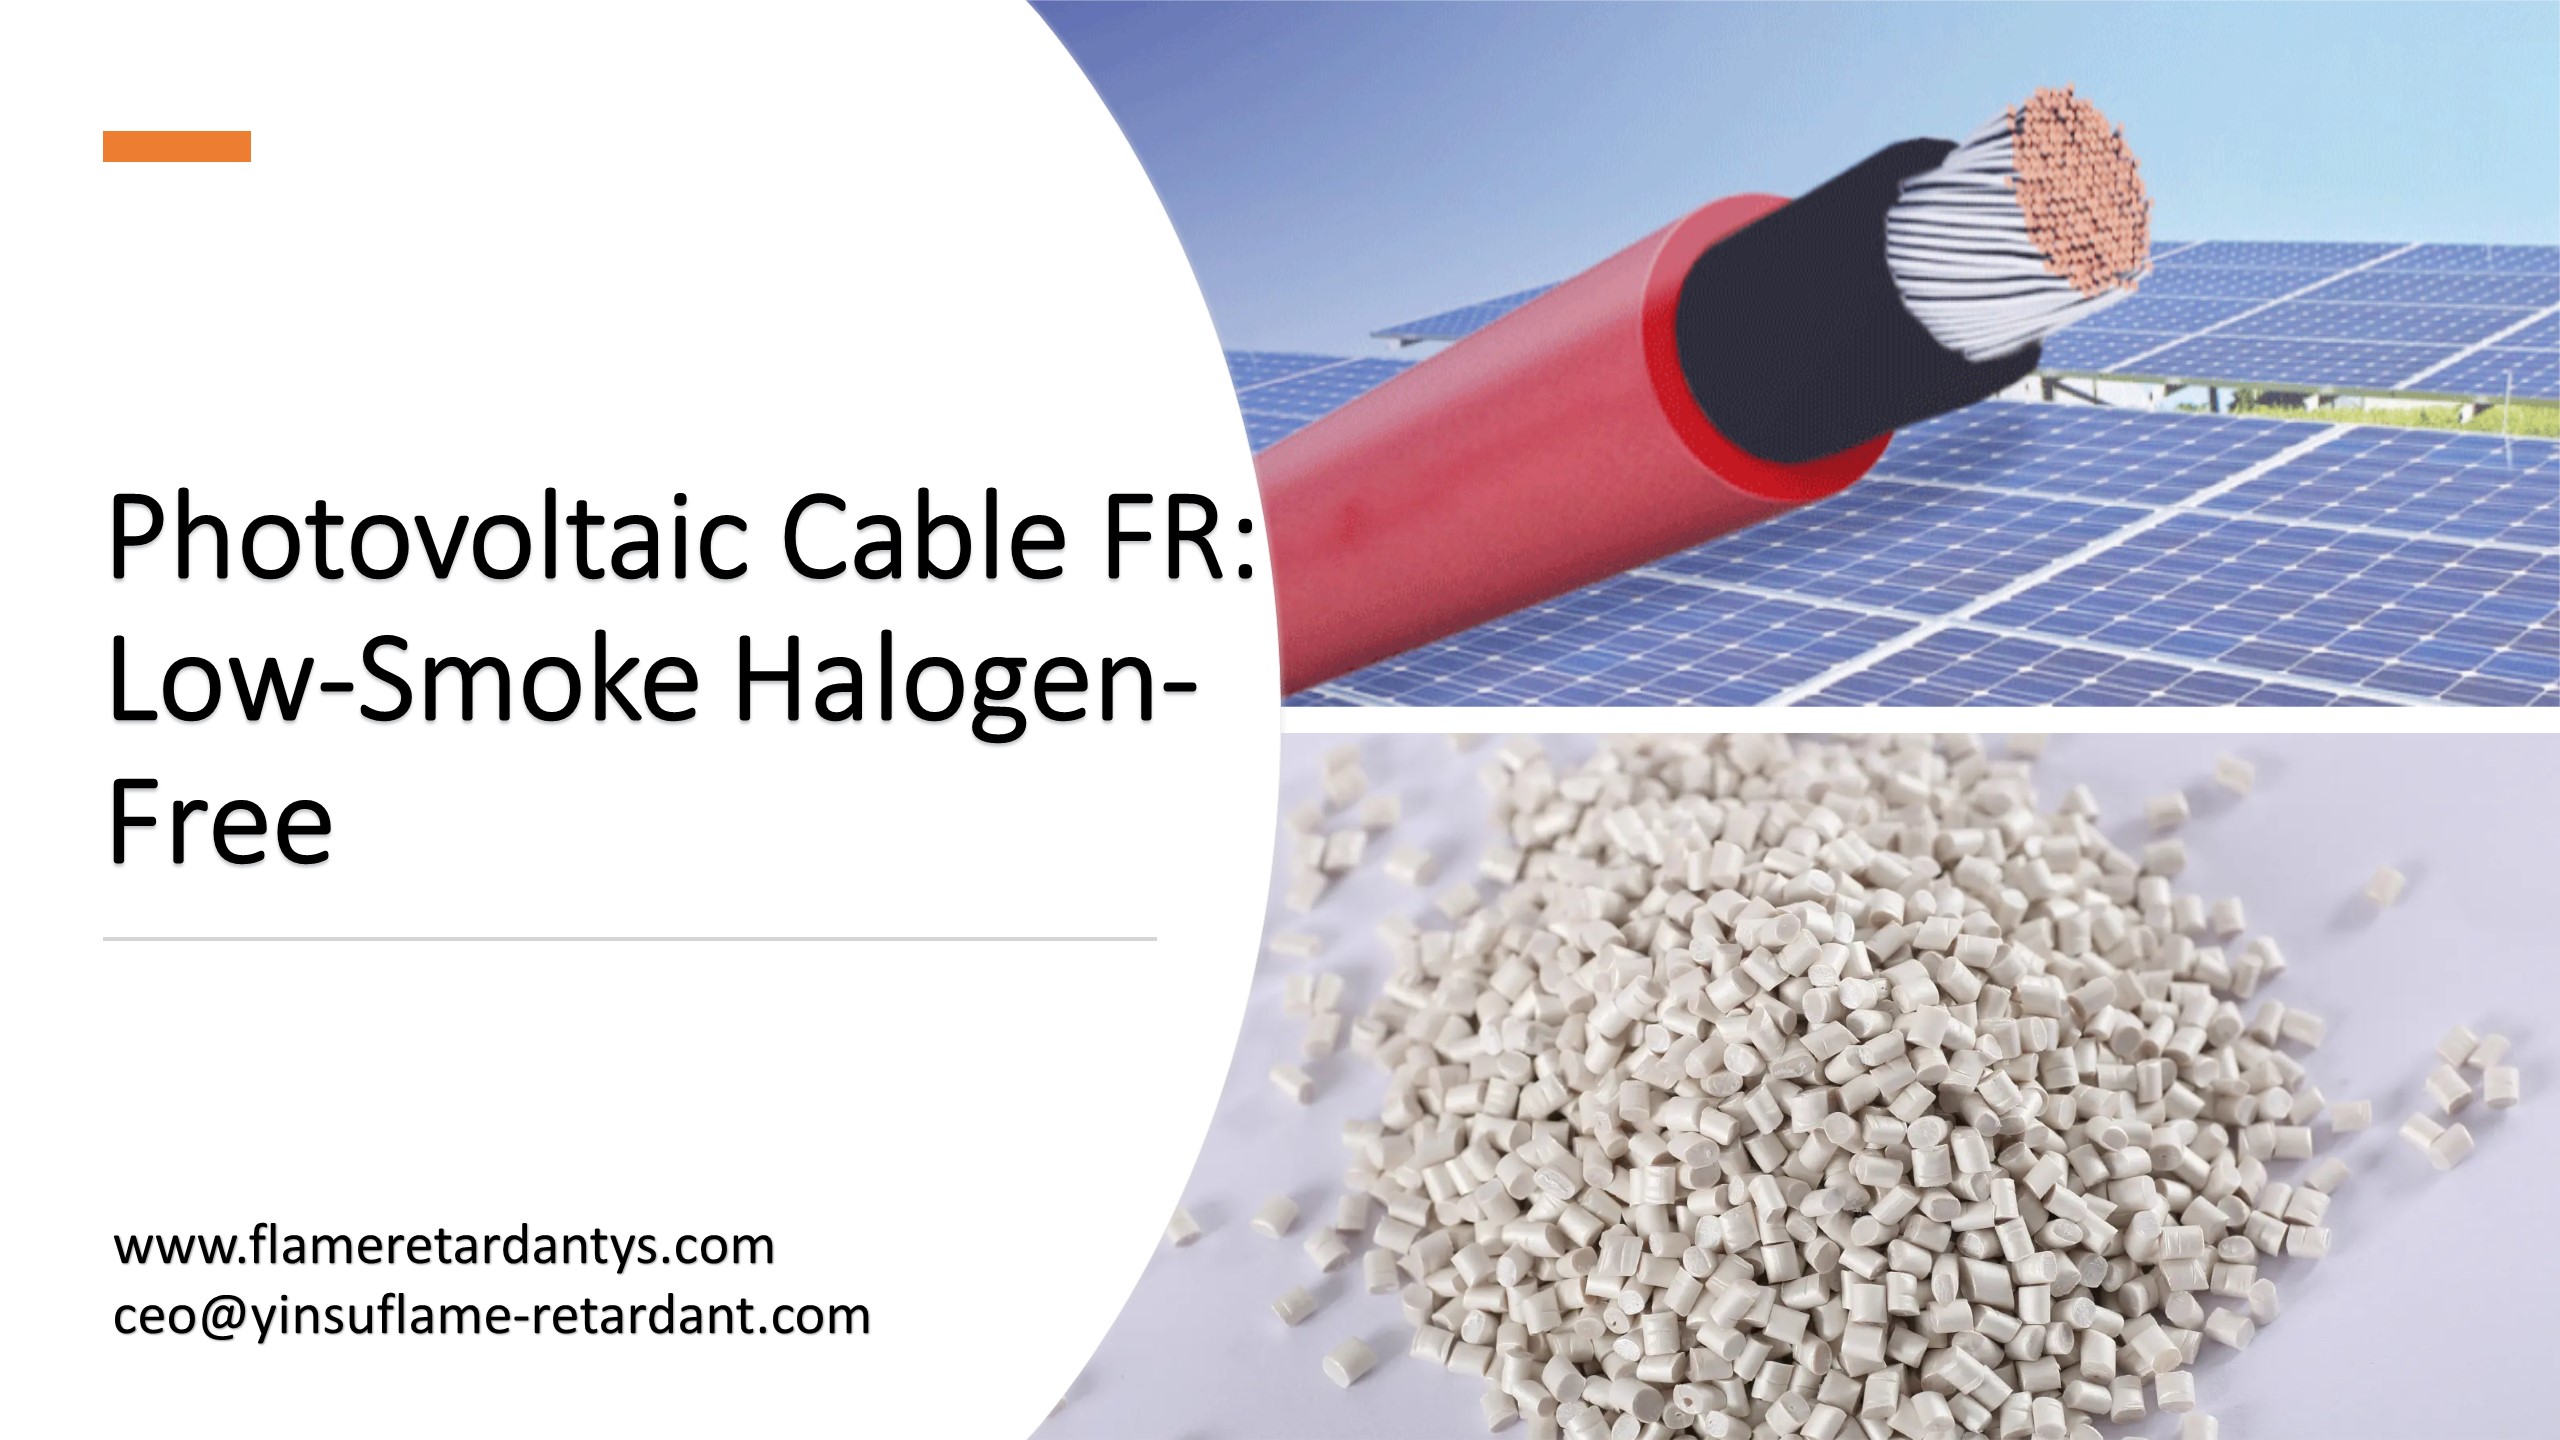 Фотоэлектрический кабель FR: без содержания галогенов с низким содержанием дыма